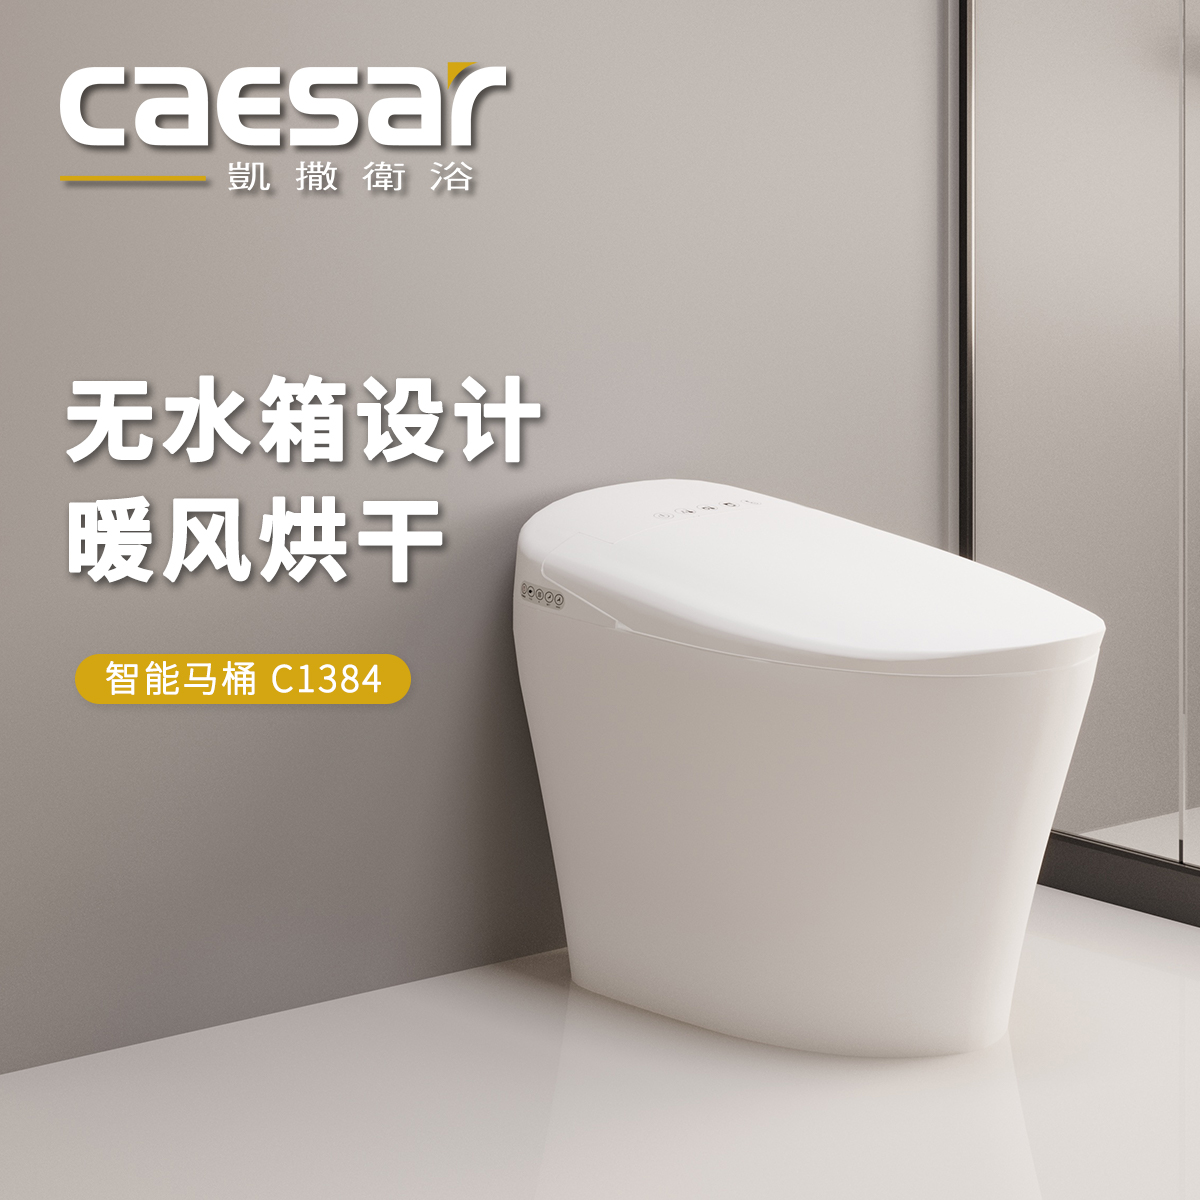 凯撒卫浴Caesar家用智能无水箱喷嘴自洁即热技术坐圈水温可调马桶